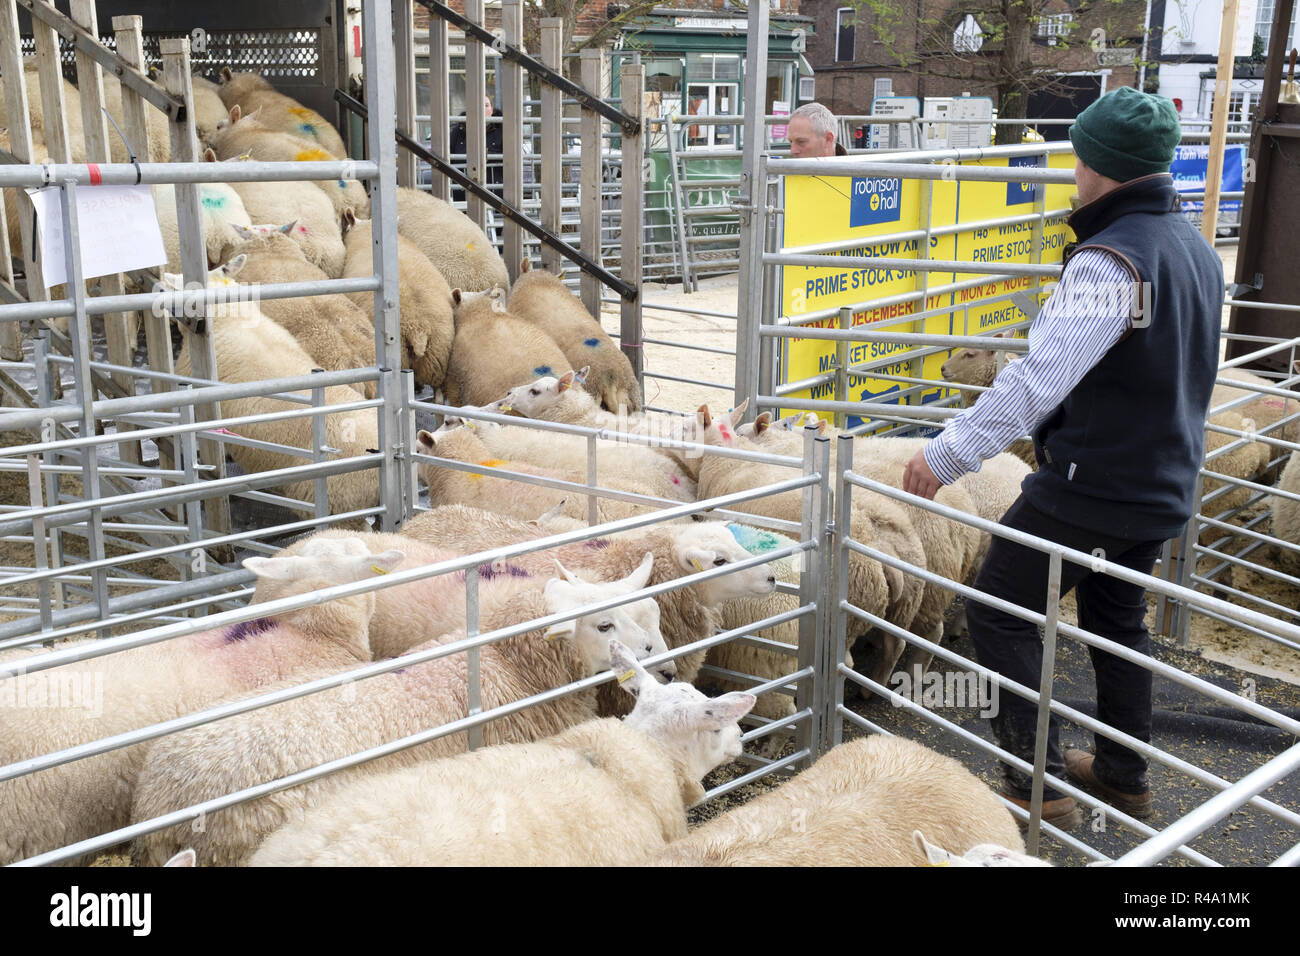 Winslow, Großbritannien - 26 November, 2018. Schafe sind in einen Lkw nach in der Winslow Primestock zeigen verkauft wird geladen. Die Show ist eine jährliche Veranstaltung in der historischen Marktstadt in Buckinghamshire statt. Credit: Paul Maguire/Alamy leben Nachrichten Stockfoto